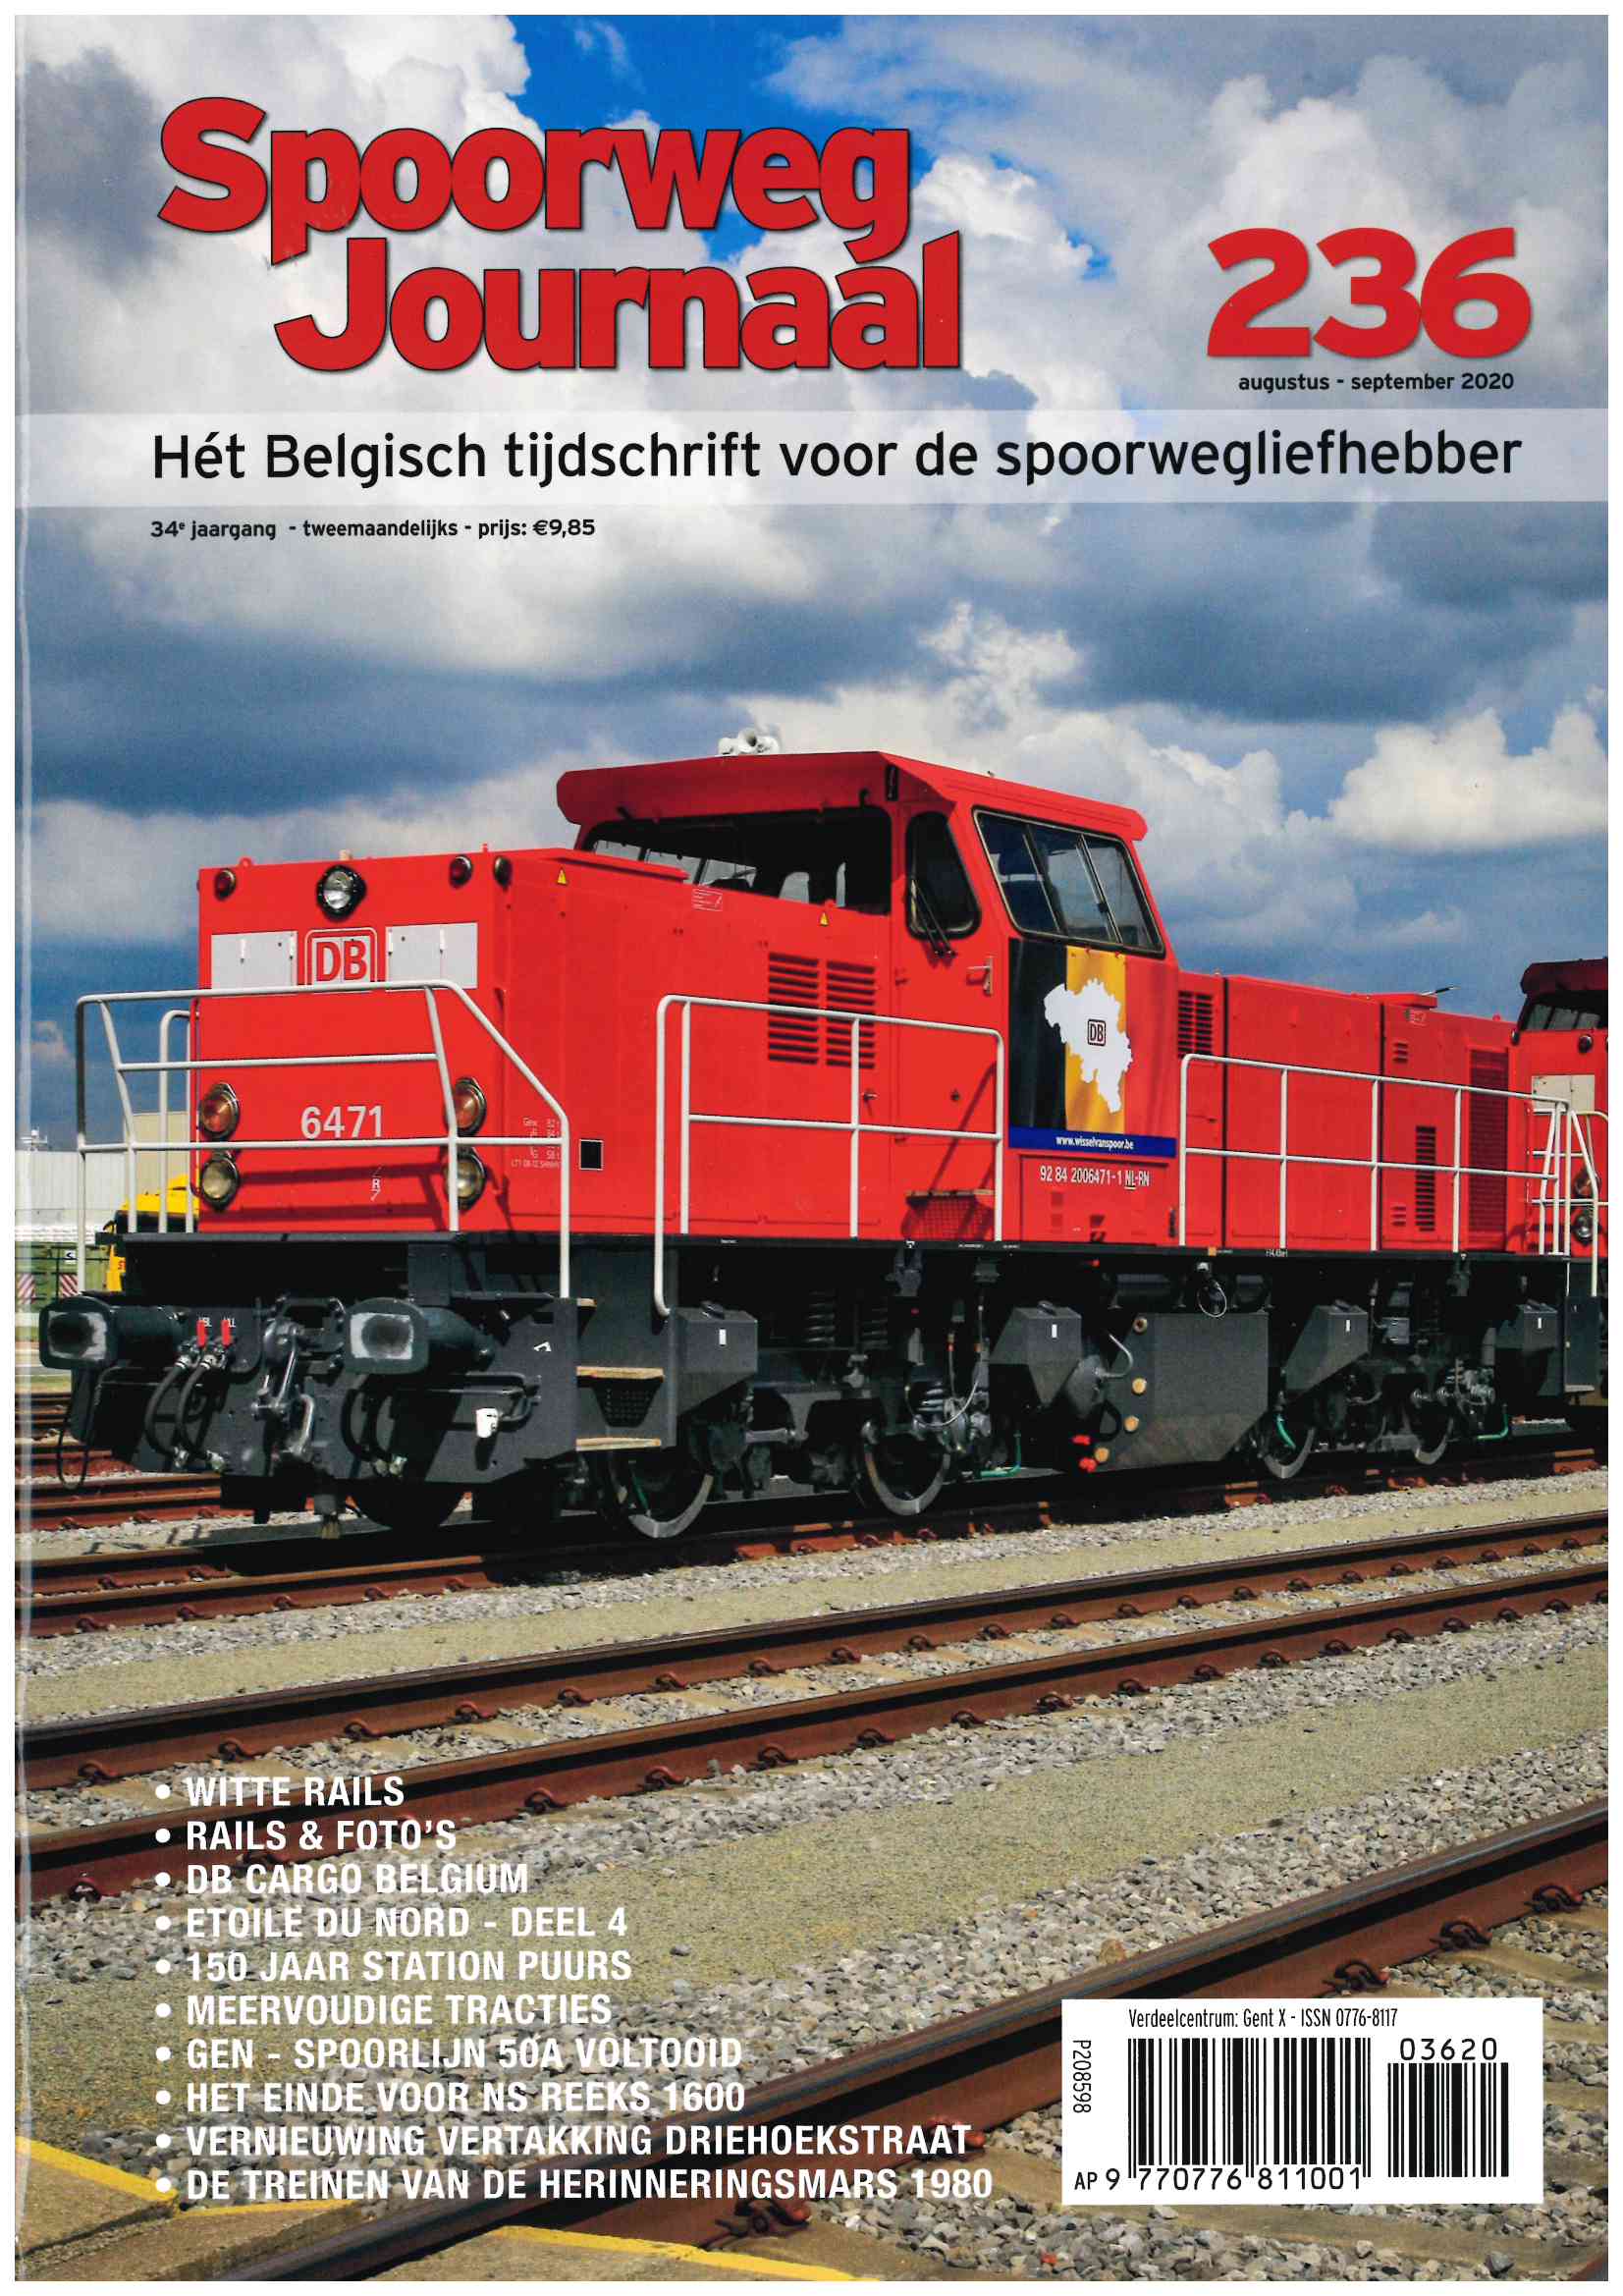 Spoorwegjournal Nr. 236 niederländische Ausgabe